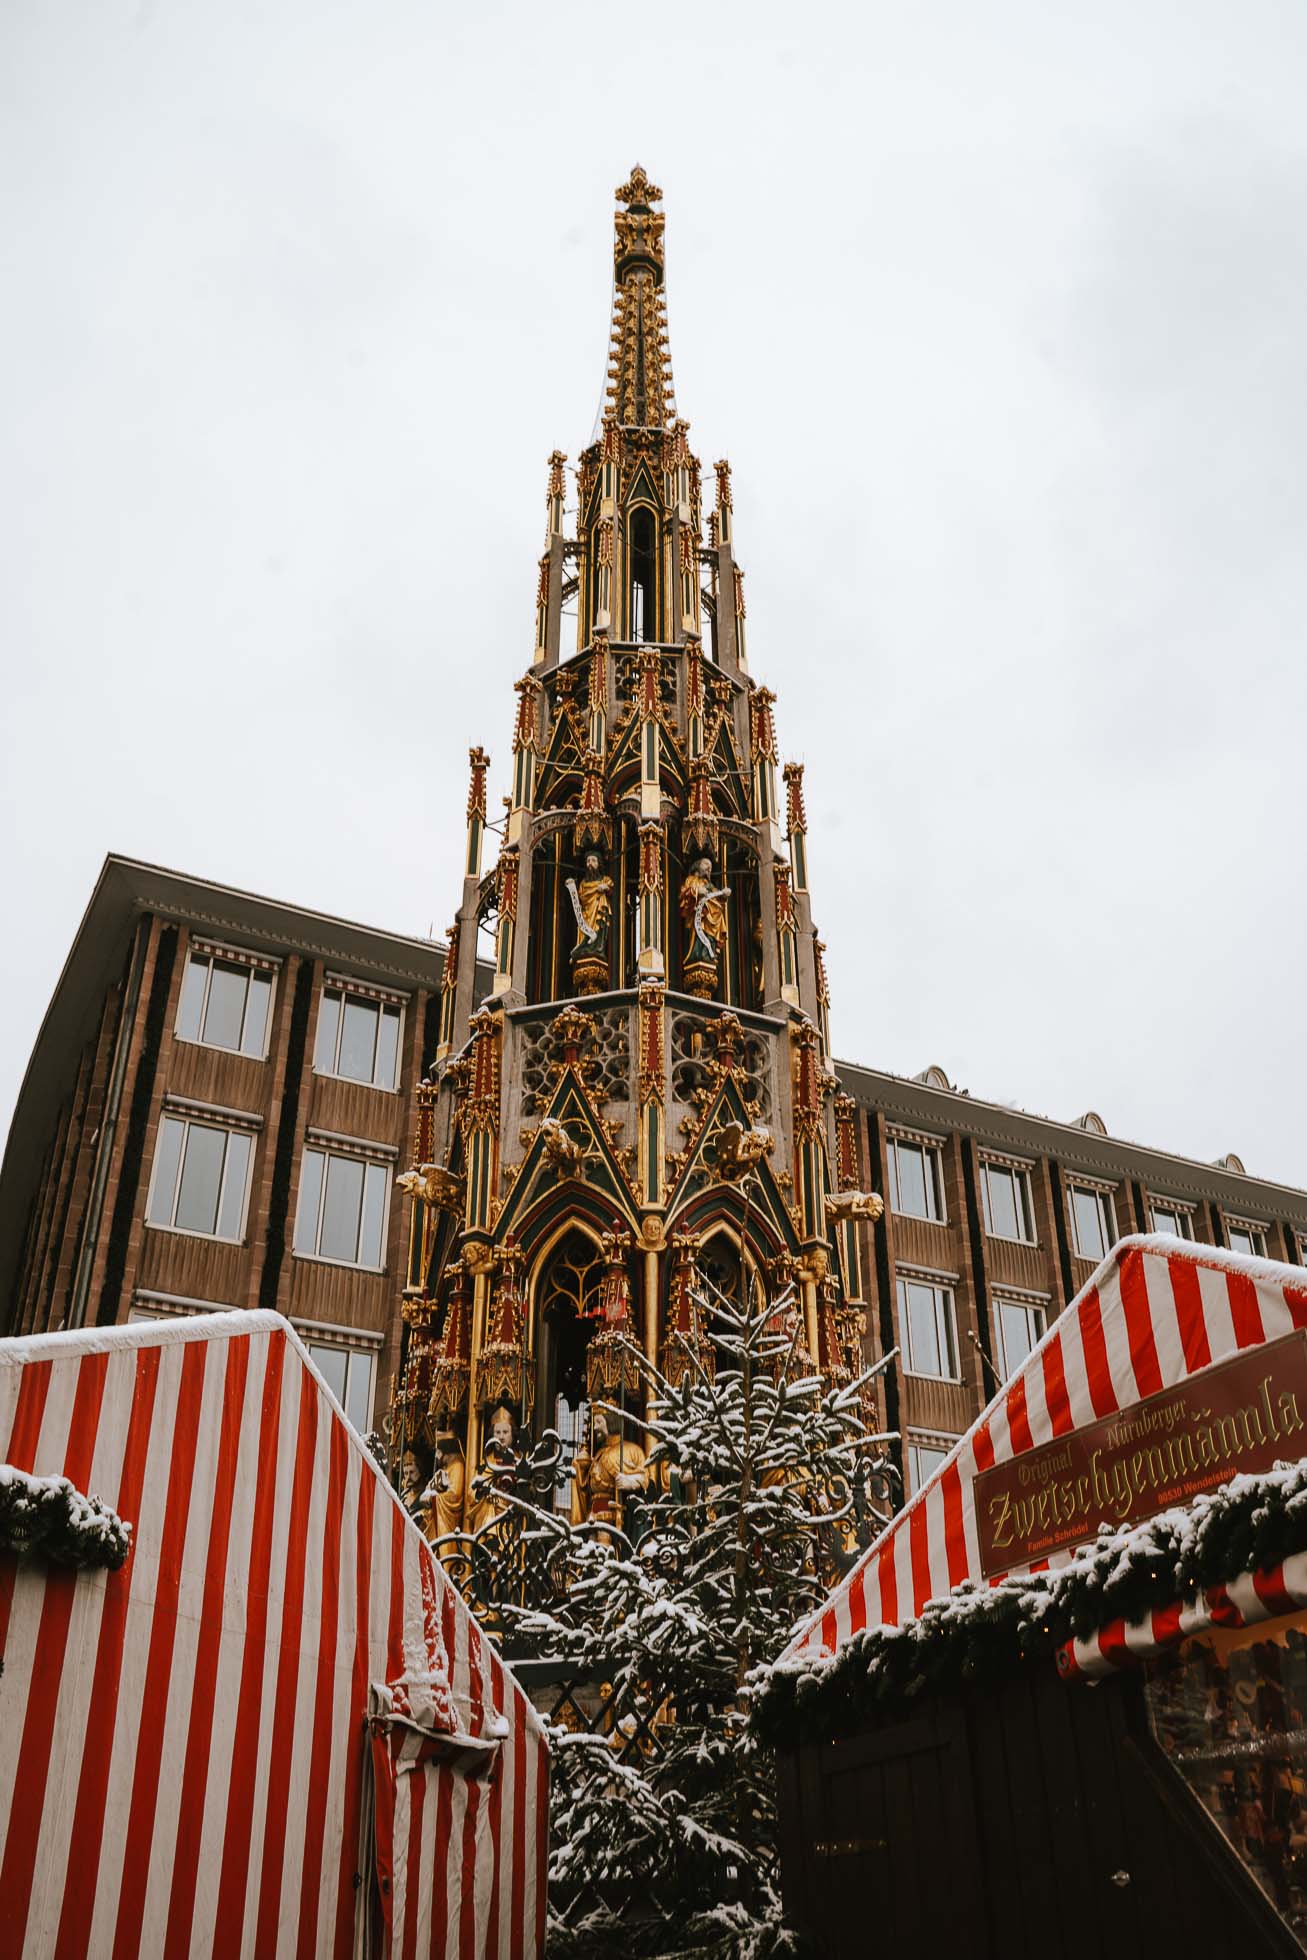 Schöner Brunnen, una fuente de estilo gótico con forma de aguja que ver en Nuremberg en Navidad